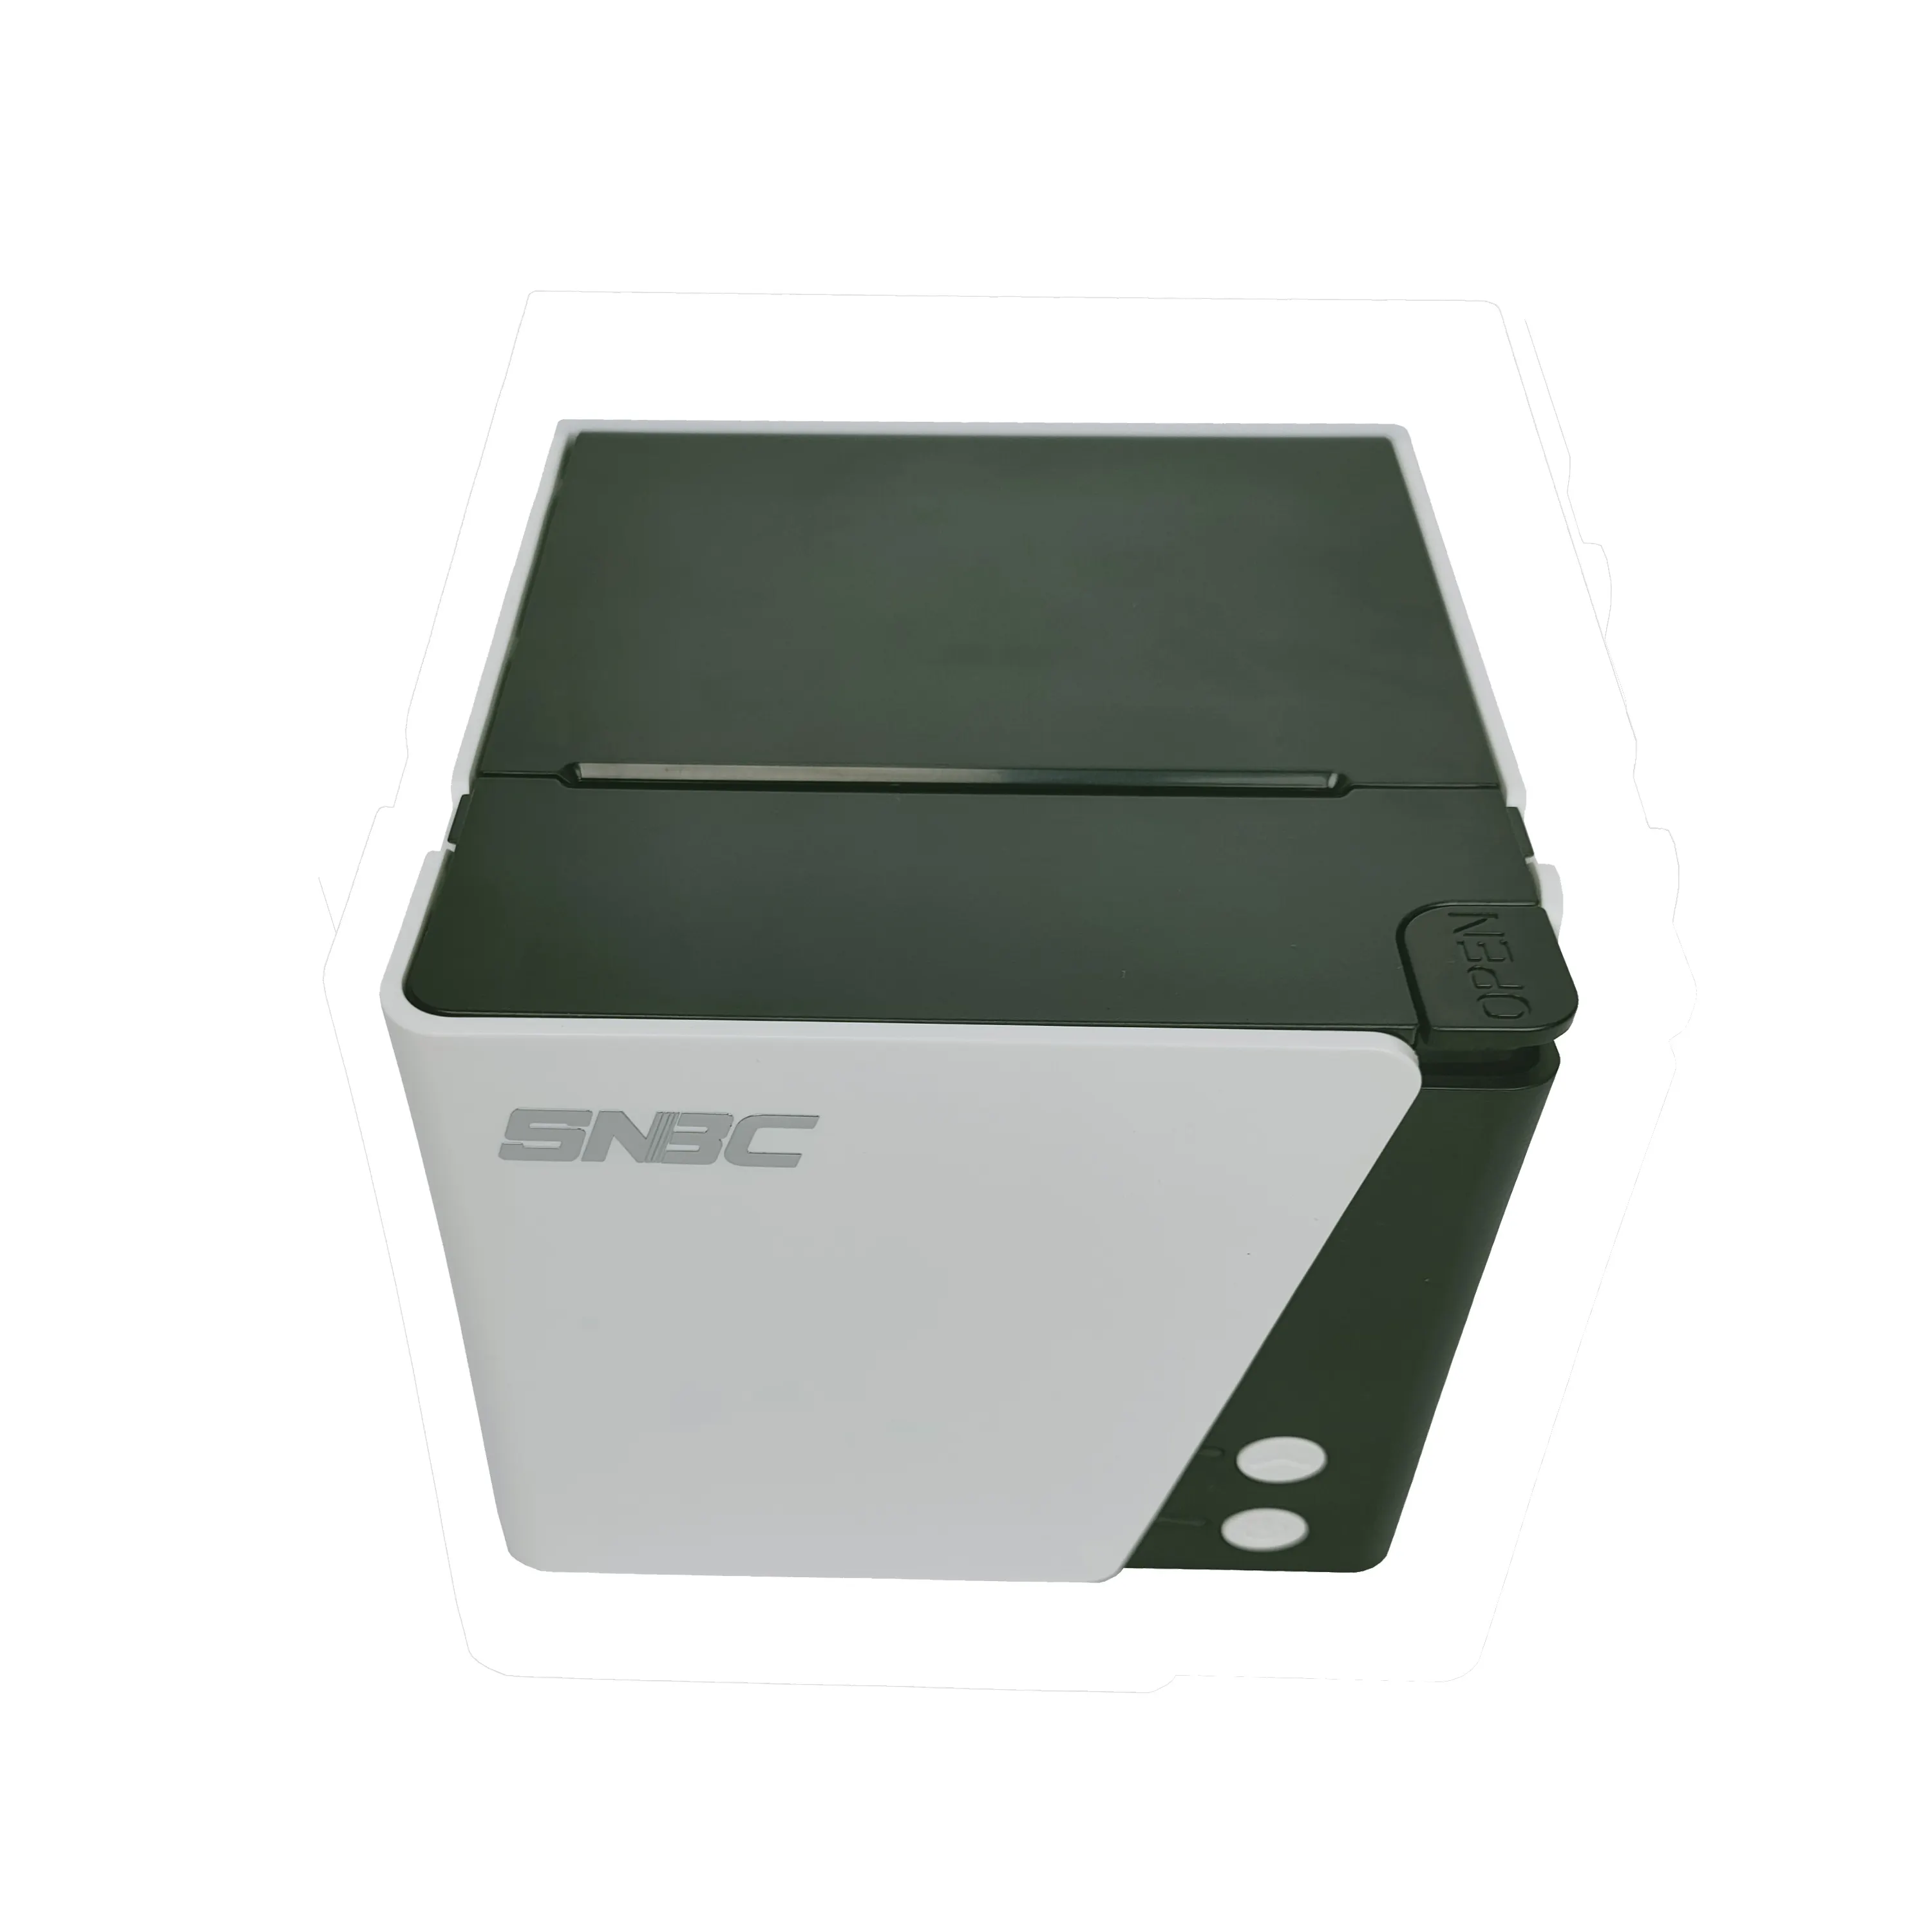 SNBC BTP-N80 Chine Numérique Imprimante Commerciale Imprimante Pos Imprimante Thermique